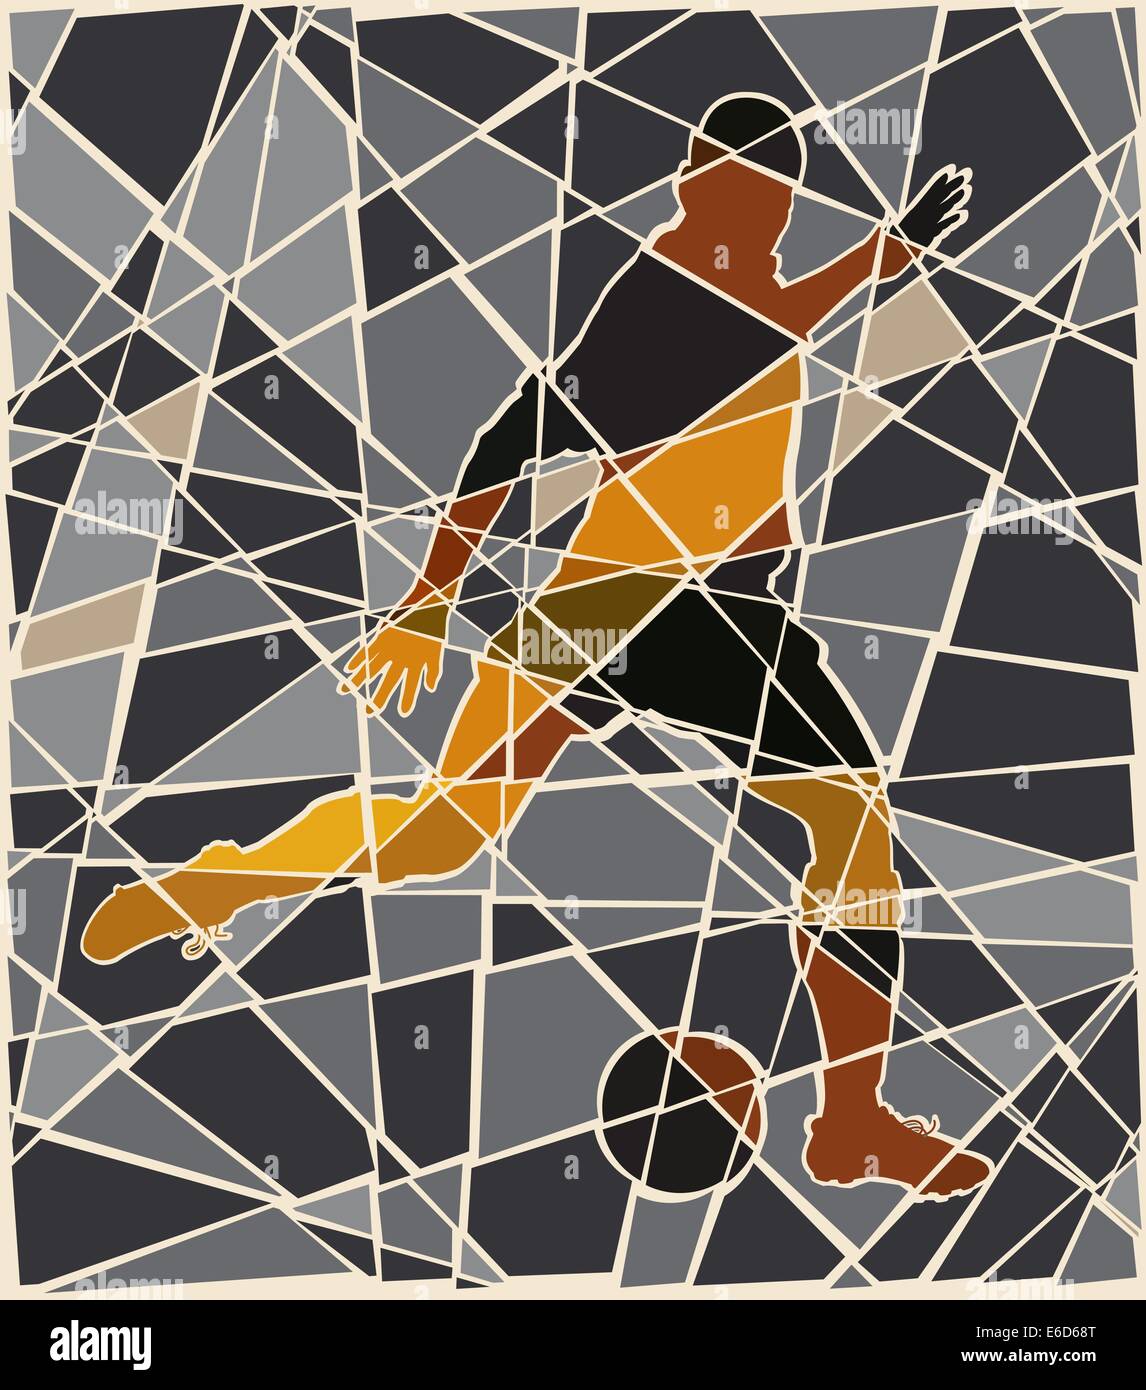 Editierbare Vektorgrafik Mosaik eines Mannes treten einen Fußball Stock Vektor